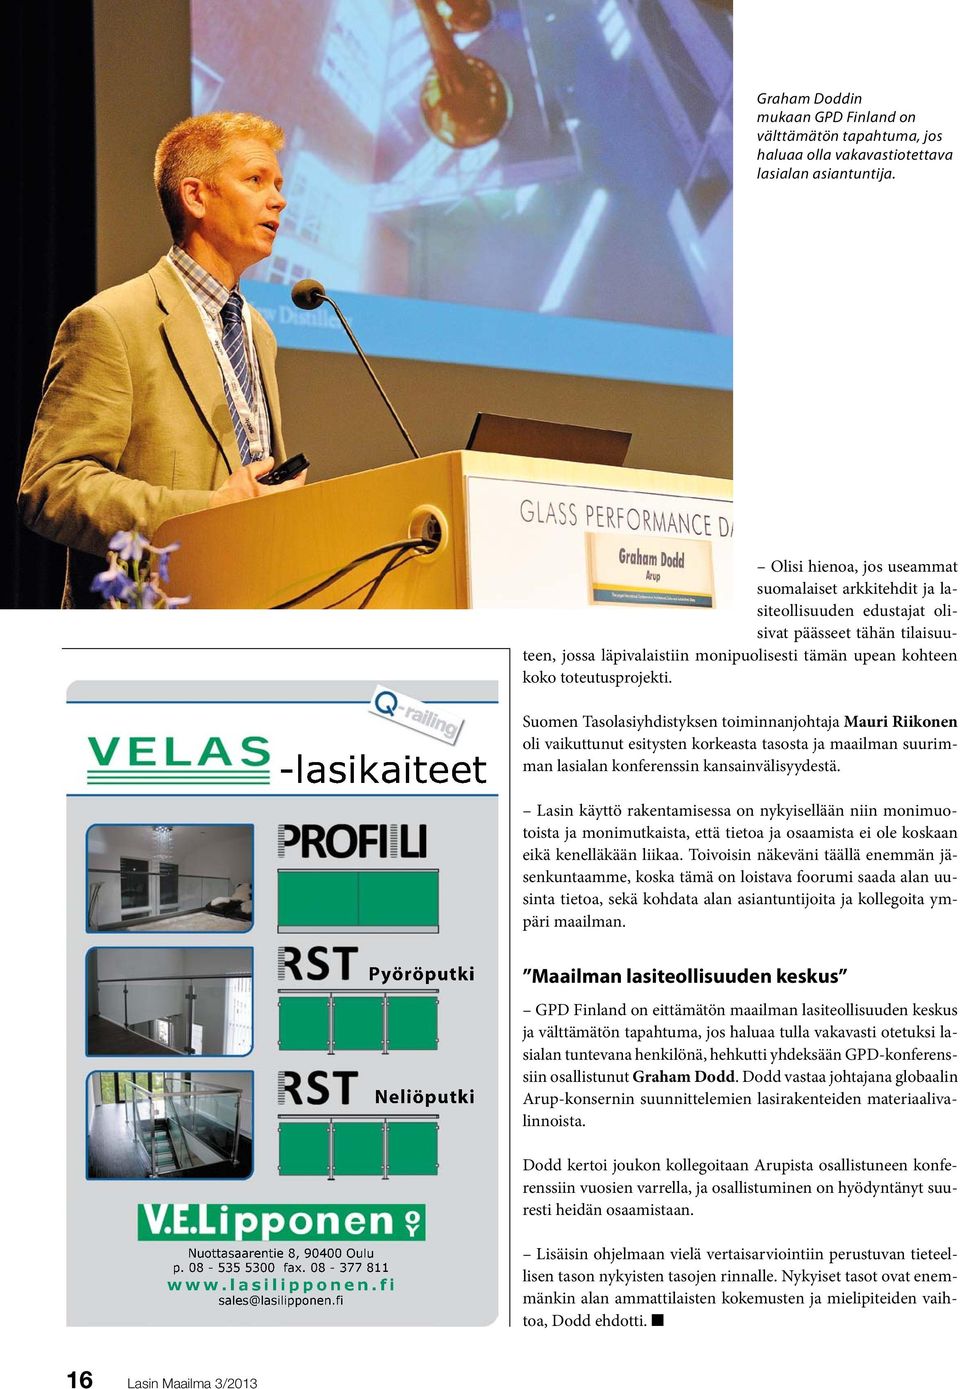 -lasikaiteet Suomen Tasolasiyhdistyksen toiminnanjohtaja Mauri Riikonen oli vaikuttunut esitysten korkeasta tasosta ja maailman suurimman lasialan konferenssin kansainvälisyydestä.